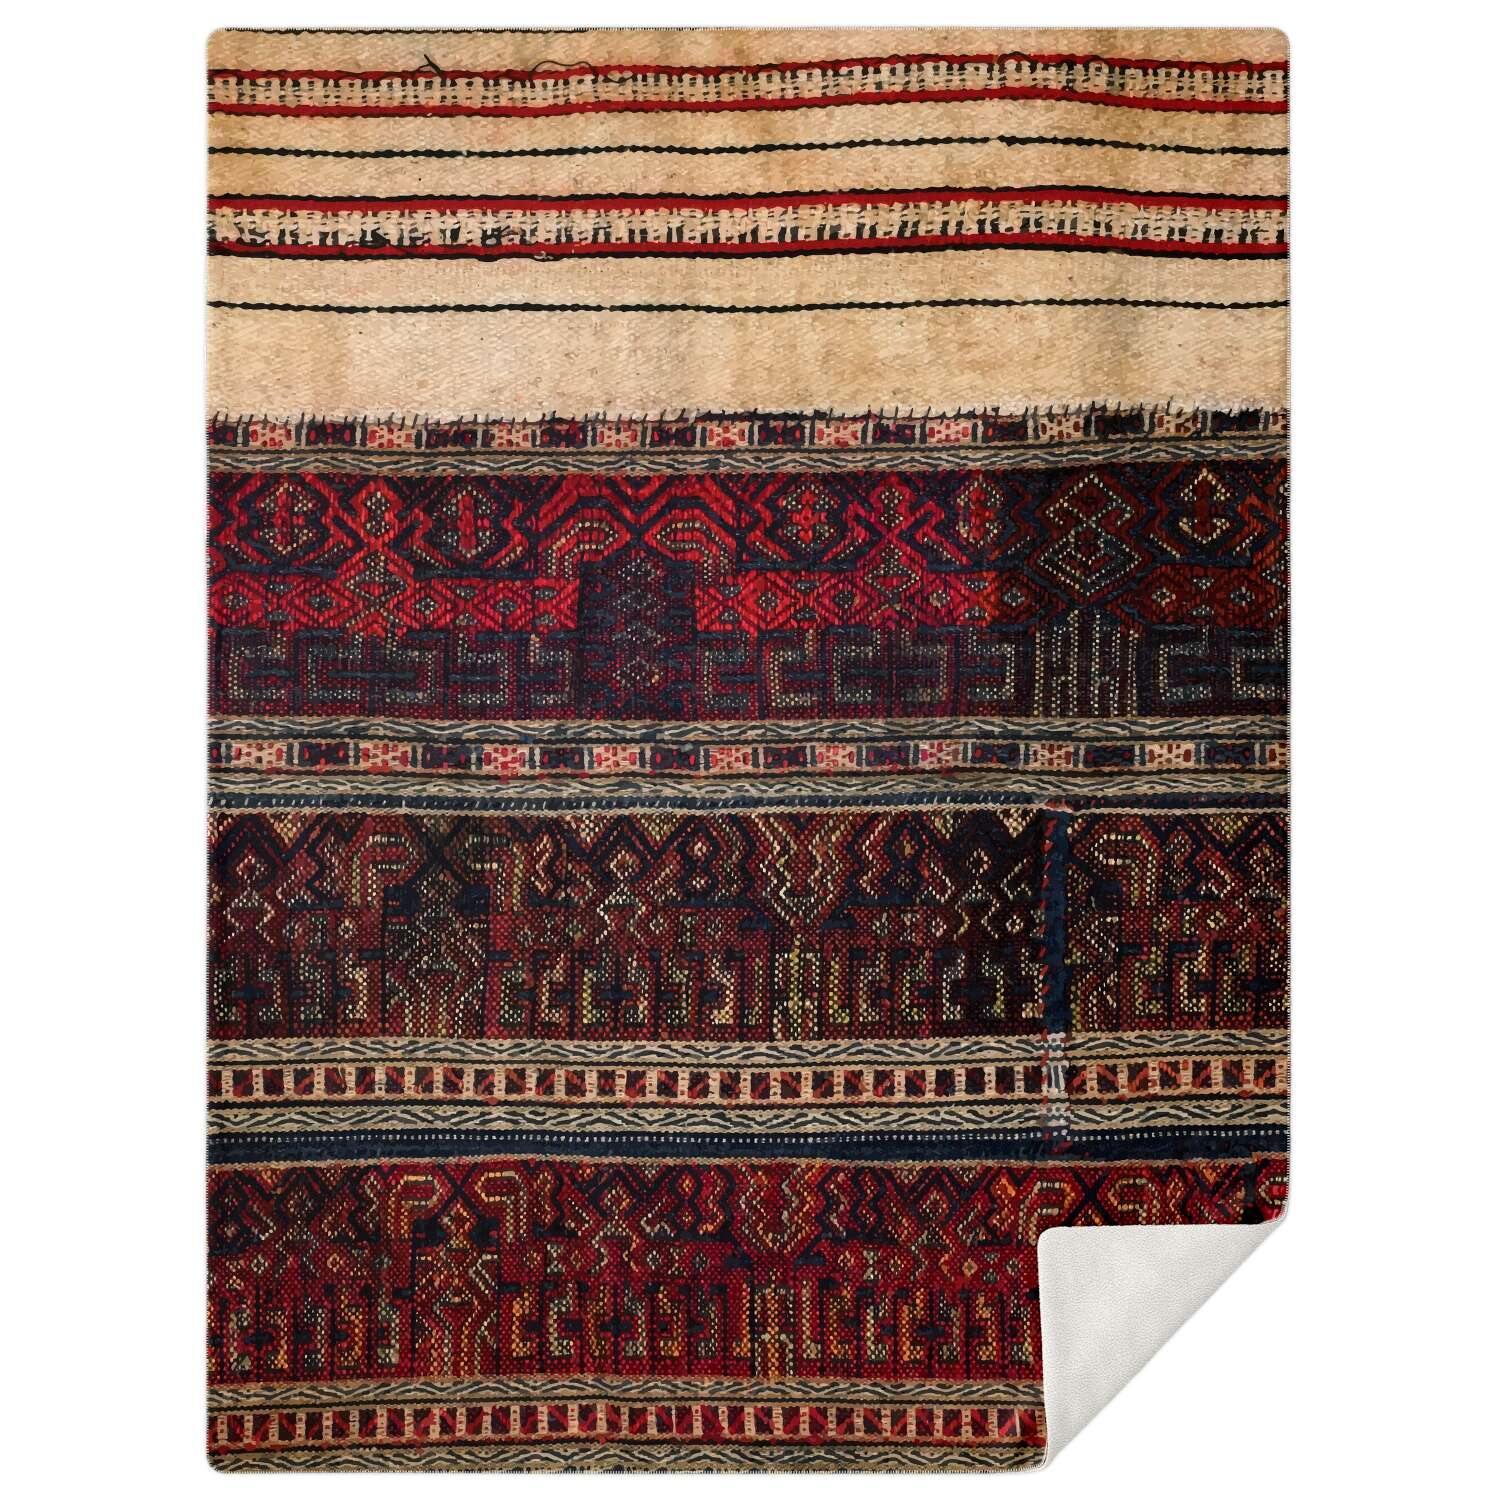 Sherpa Fleece Blanket M Fleece Blanket - Li Culture Traditional Woven Design